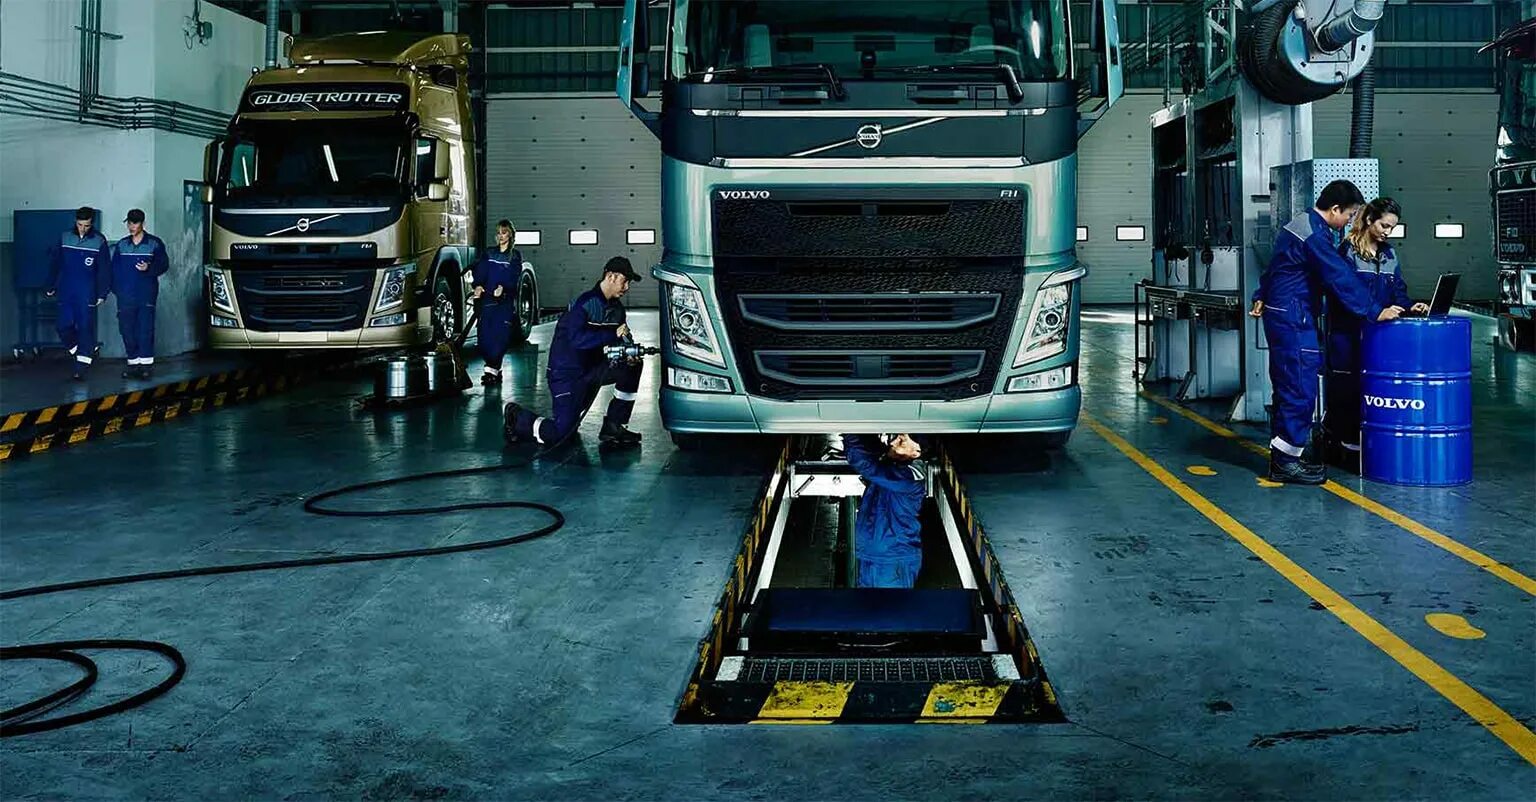 Сто грузовиков. СТО грузовых автомобилей Вольво. Техническое обслуживание грузовых автомобилей. Автосервис для грузовиков. Техническое обслуживание грузовых автомобилей Volvo.